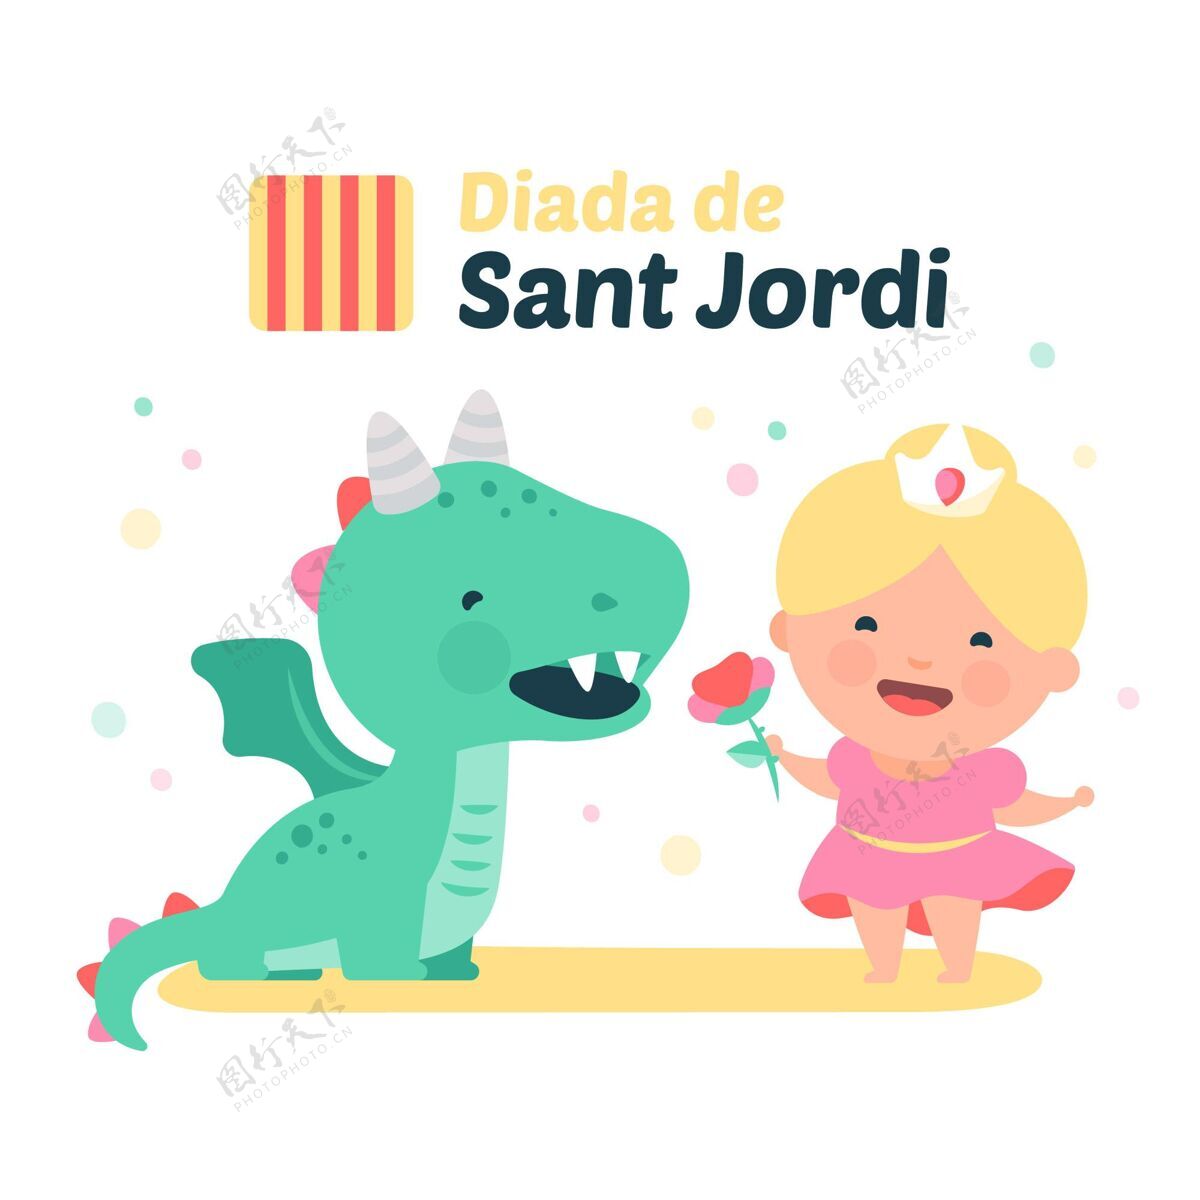 插图手绘迪亚达圣约第插图与龙和公主场合4月23日西班牙